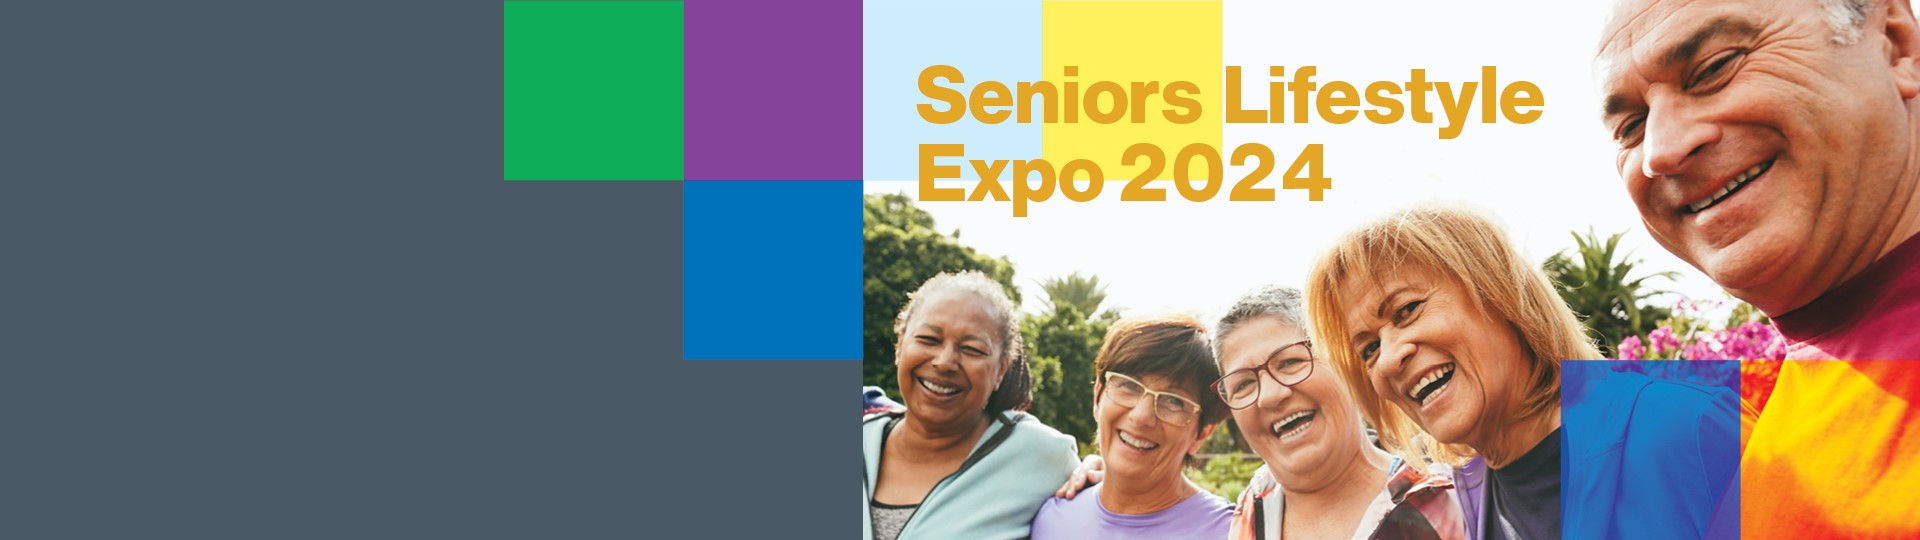 Seniors Lifestyle Expo